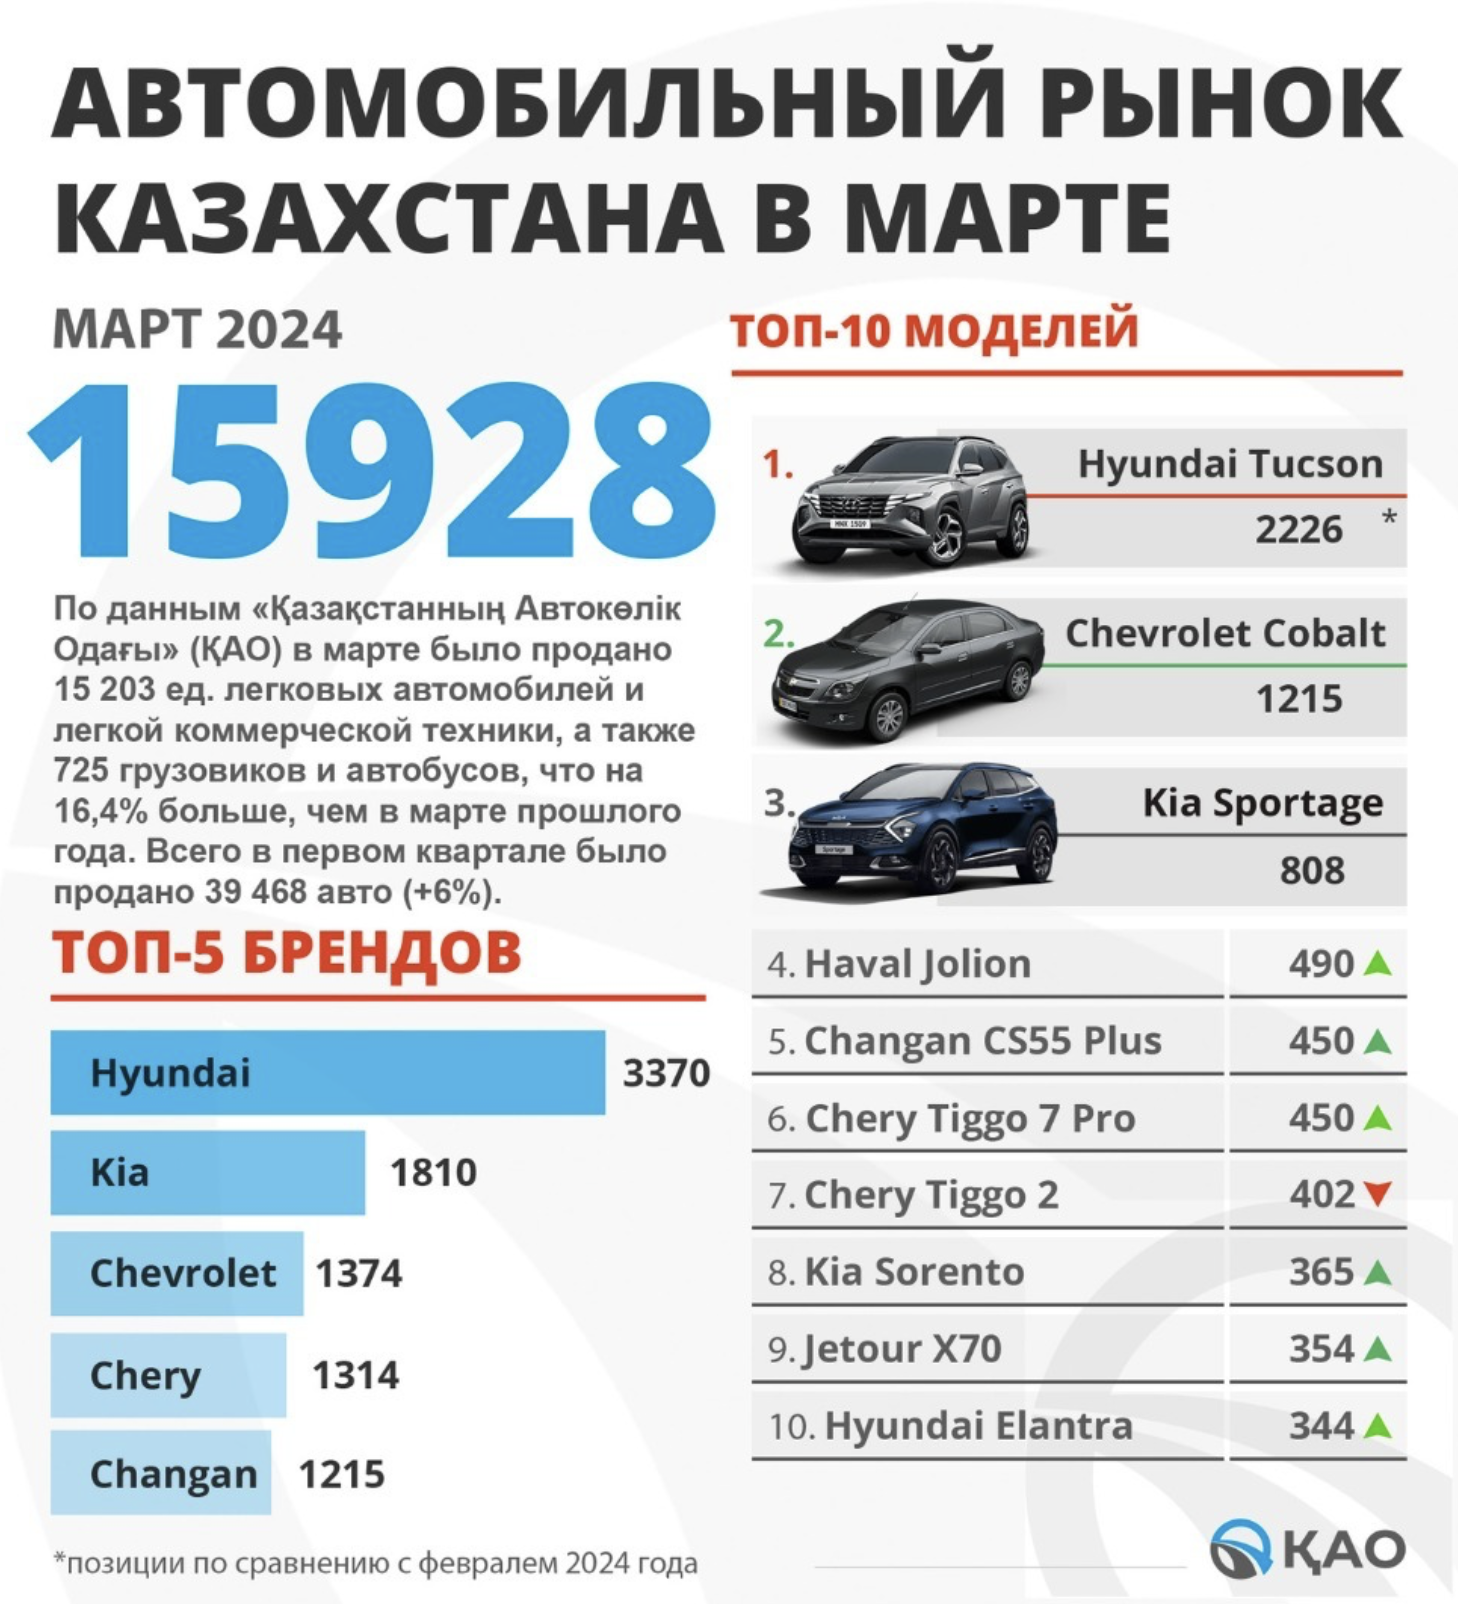 Автомобильный рынок Казахстана в марте 2024 года